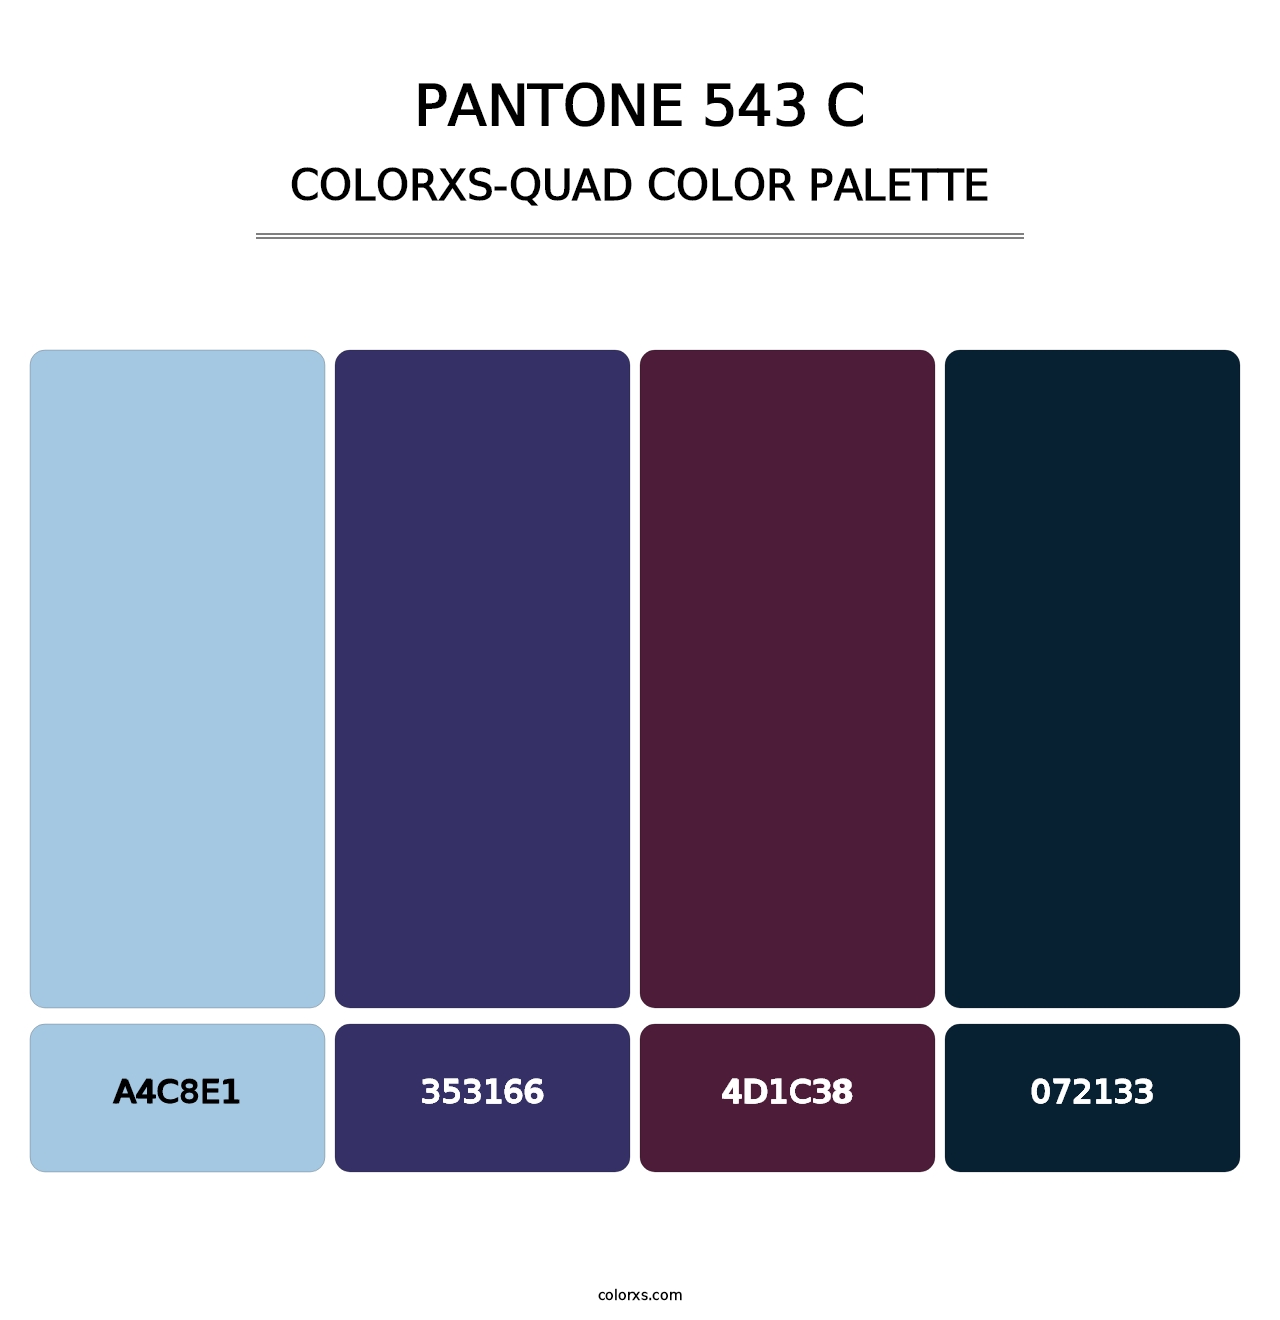 PANTONE 543 C - Colorxs Quad Palette